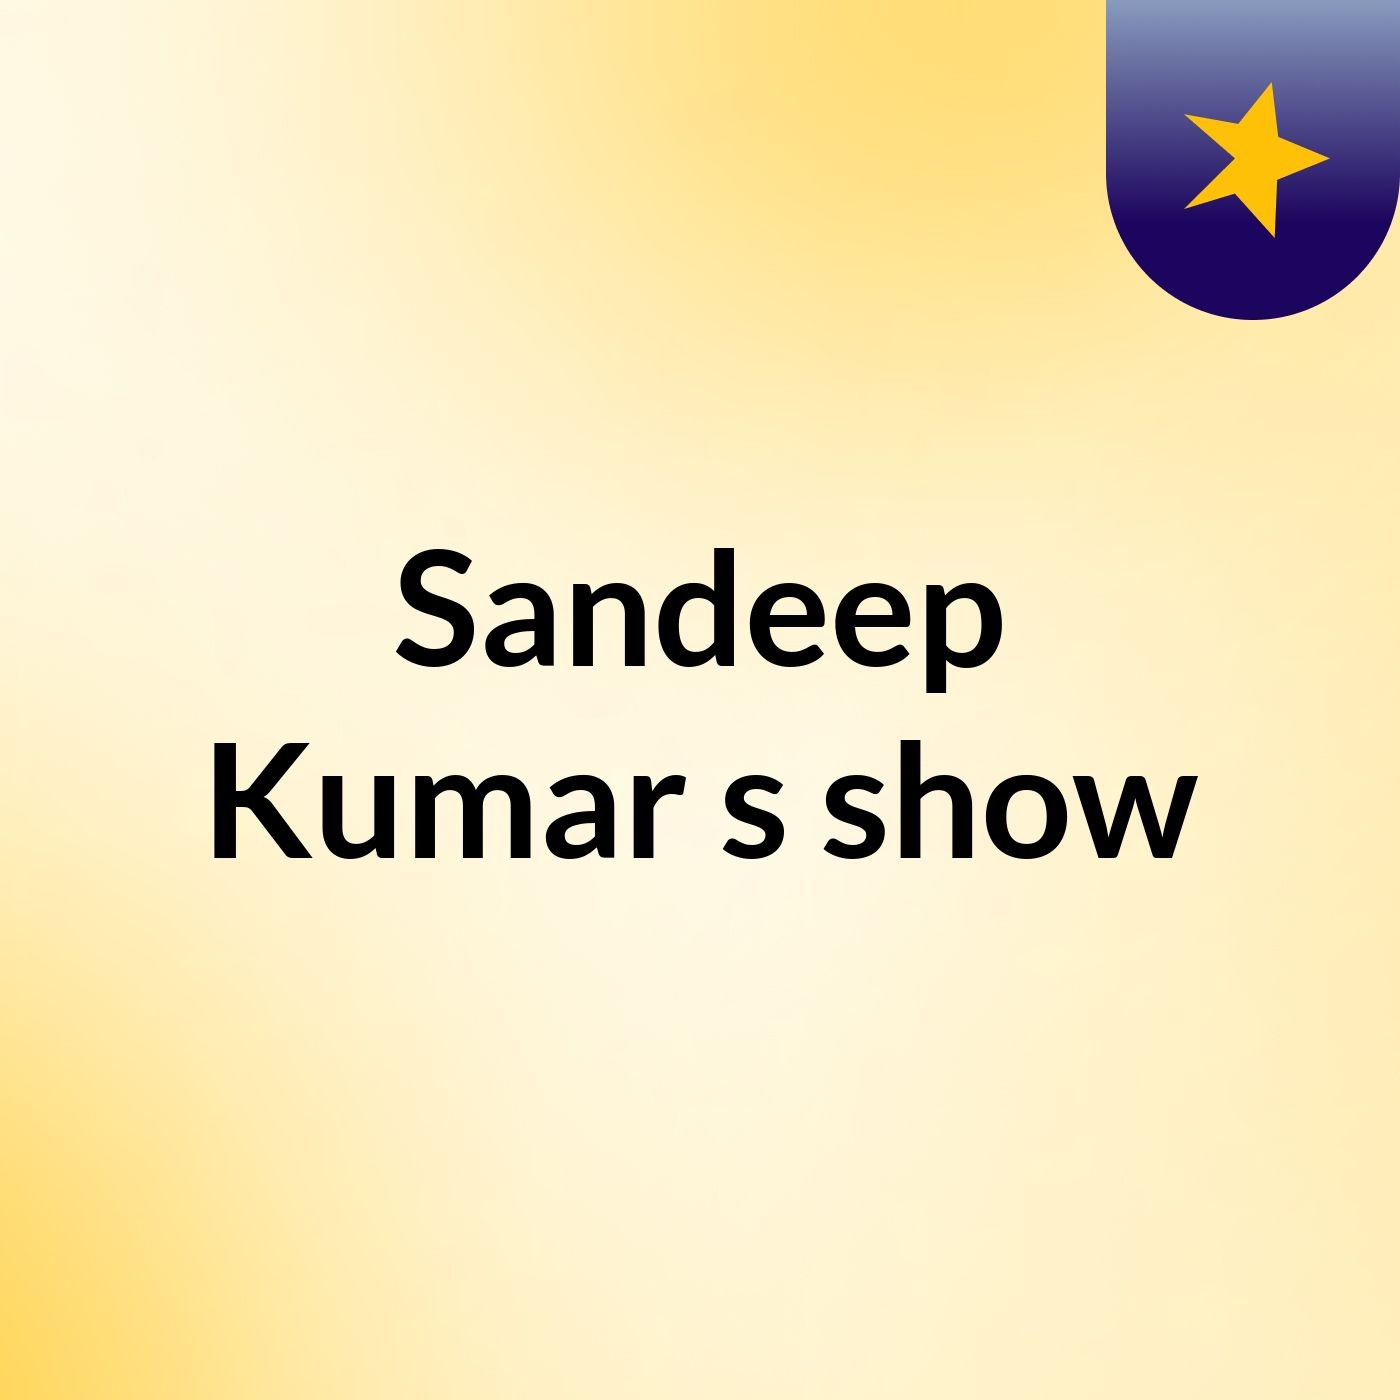 Sandeep Kumar's show